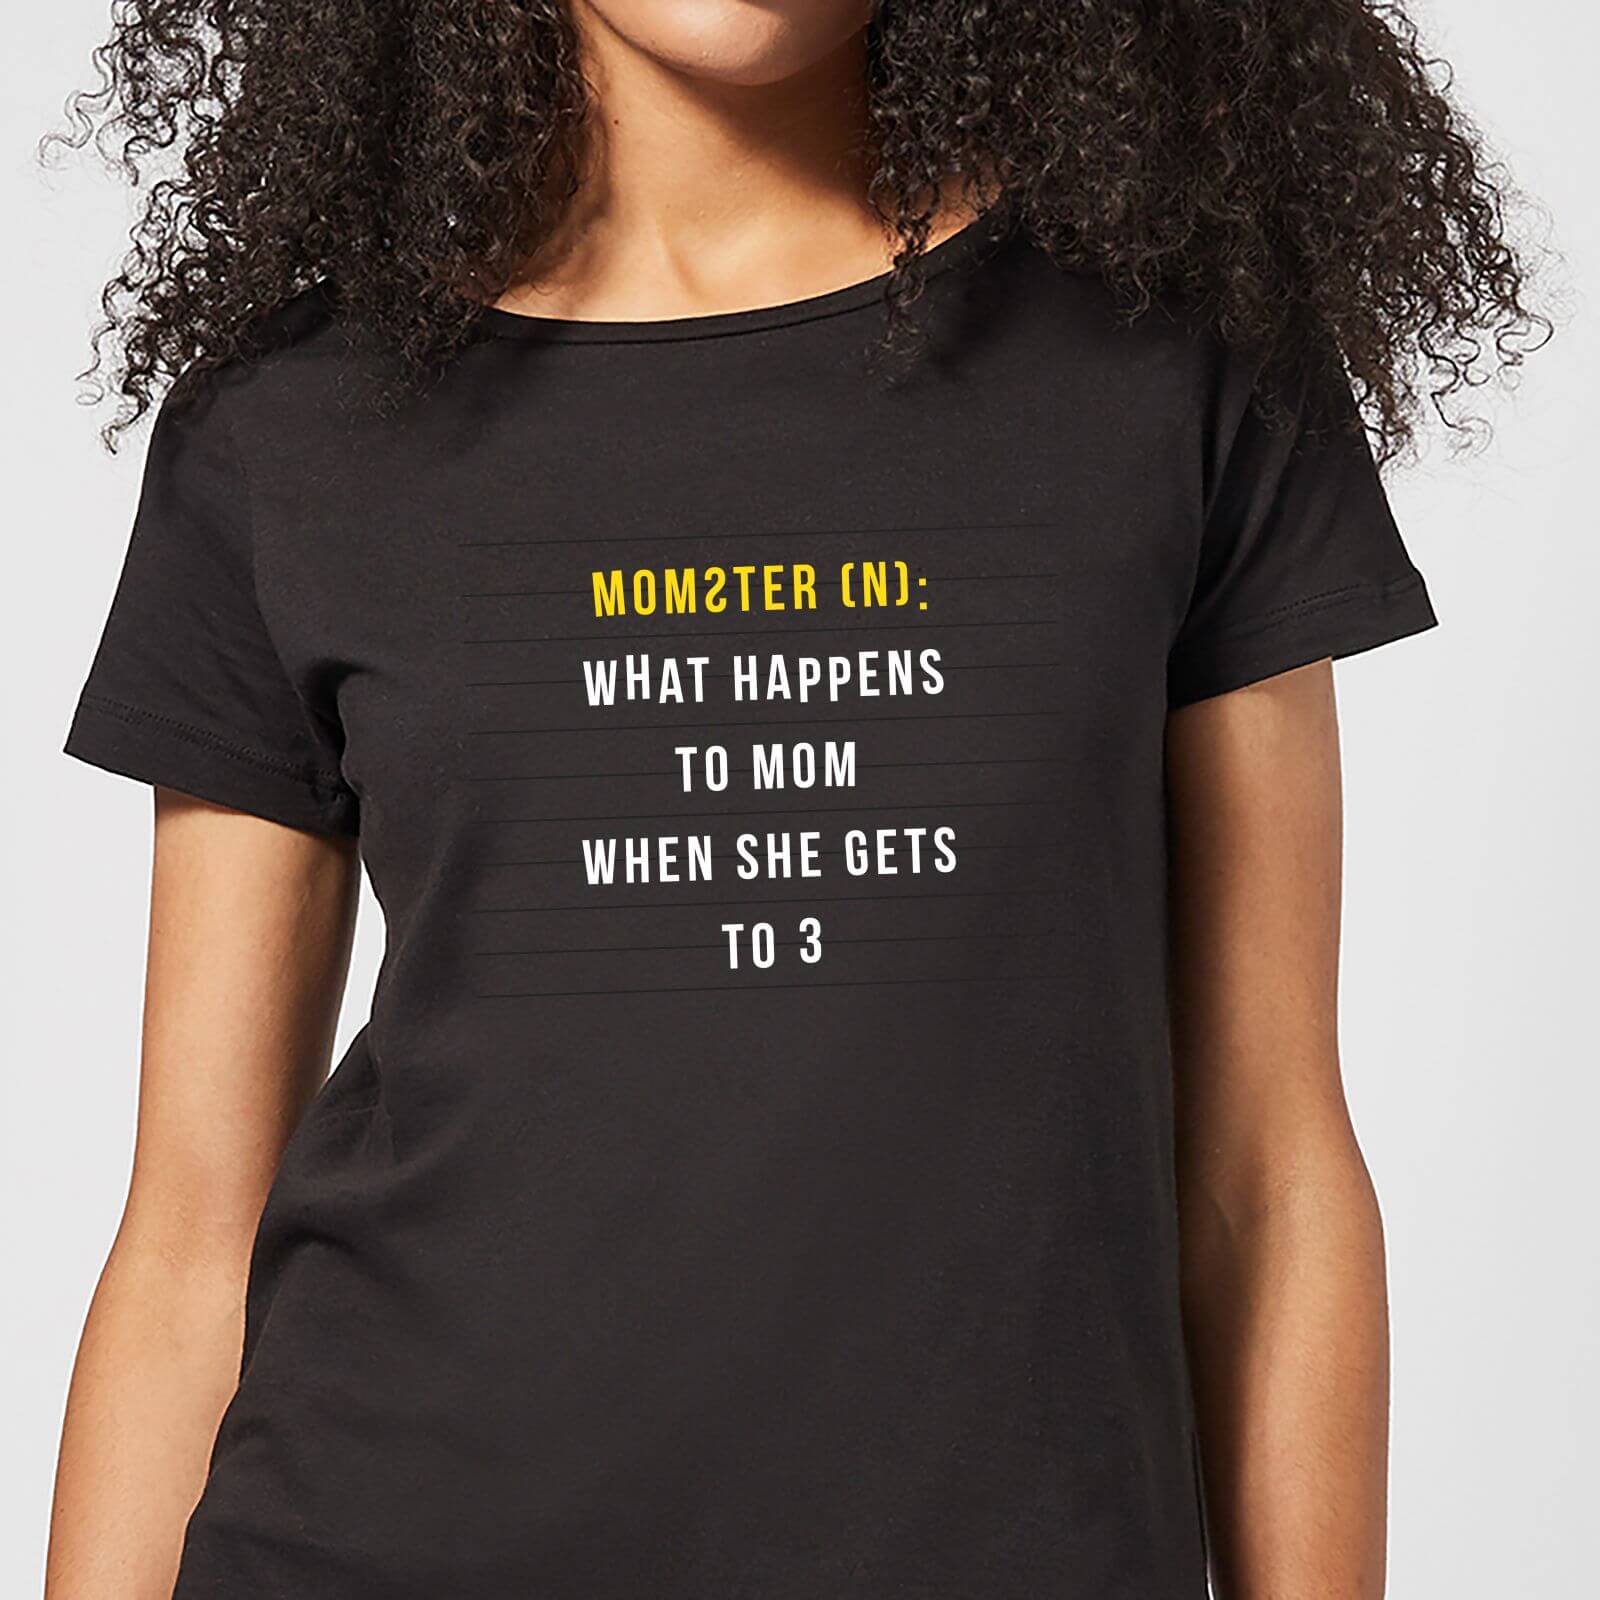 Momster Women's T-Shirt - Black - M - Black